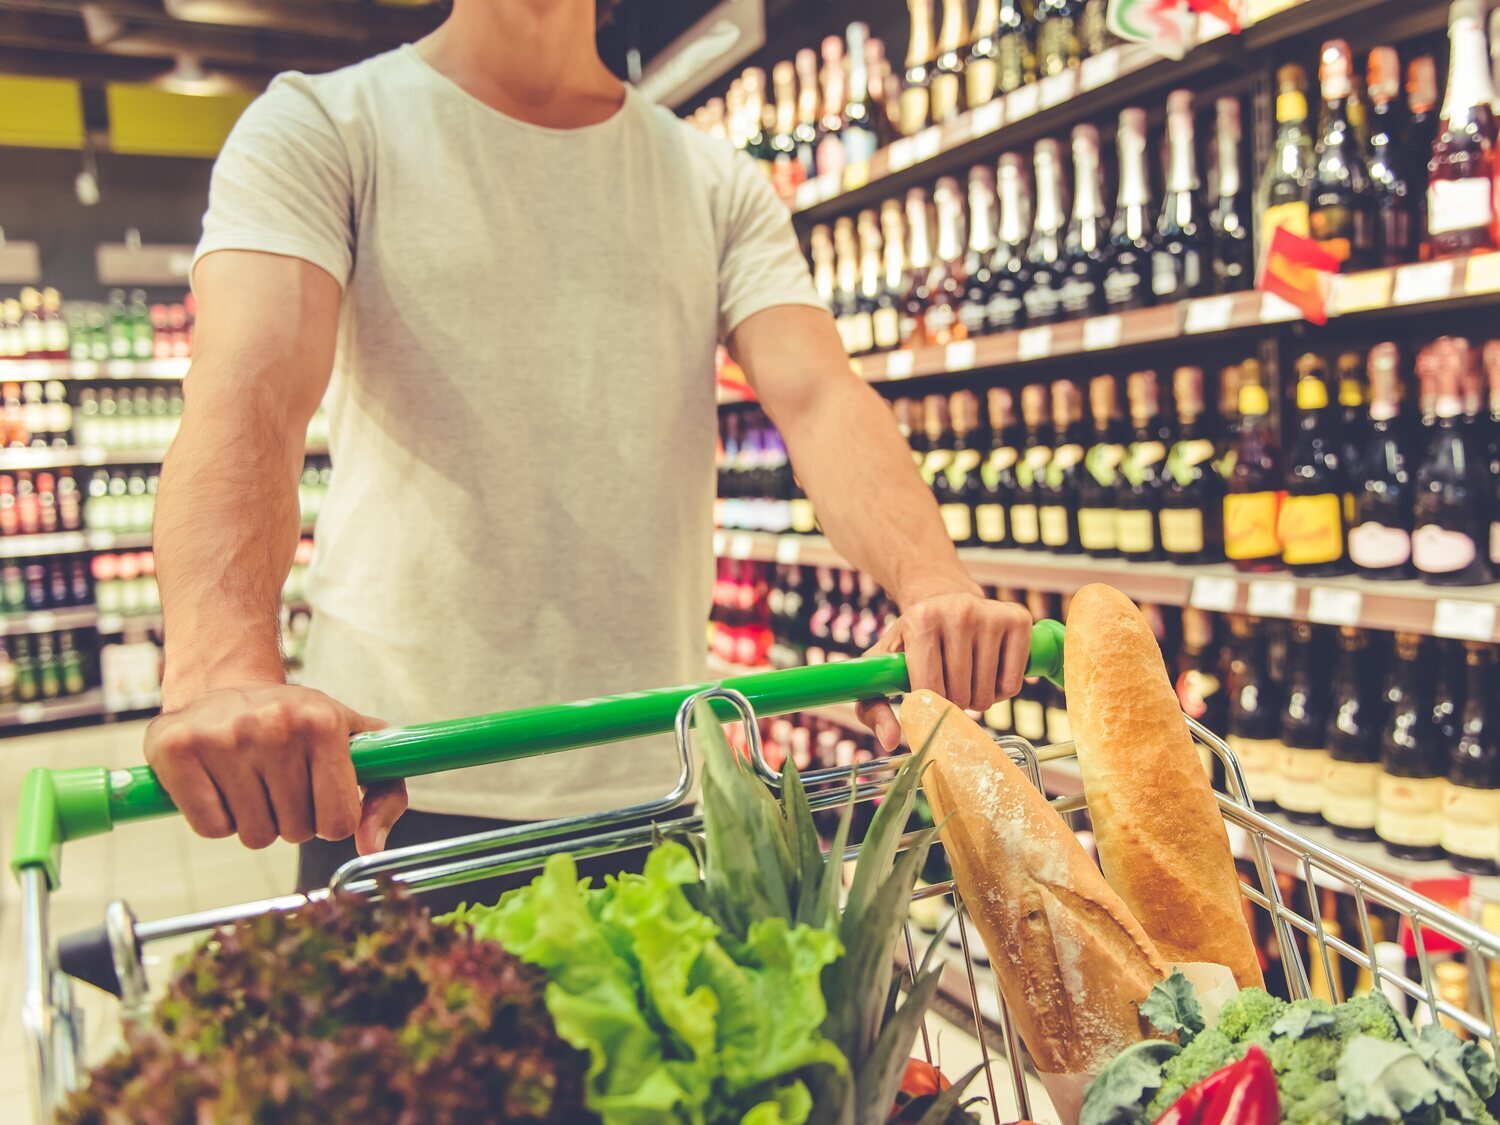 Los supermercados con los productos ecológicos más baratos, según la OCU